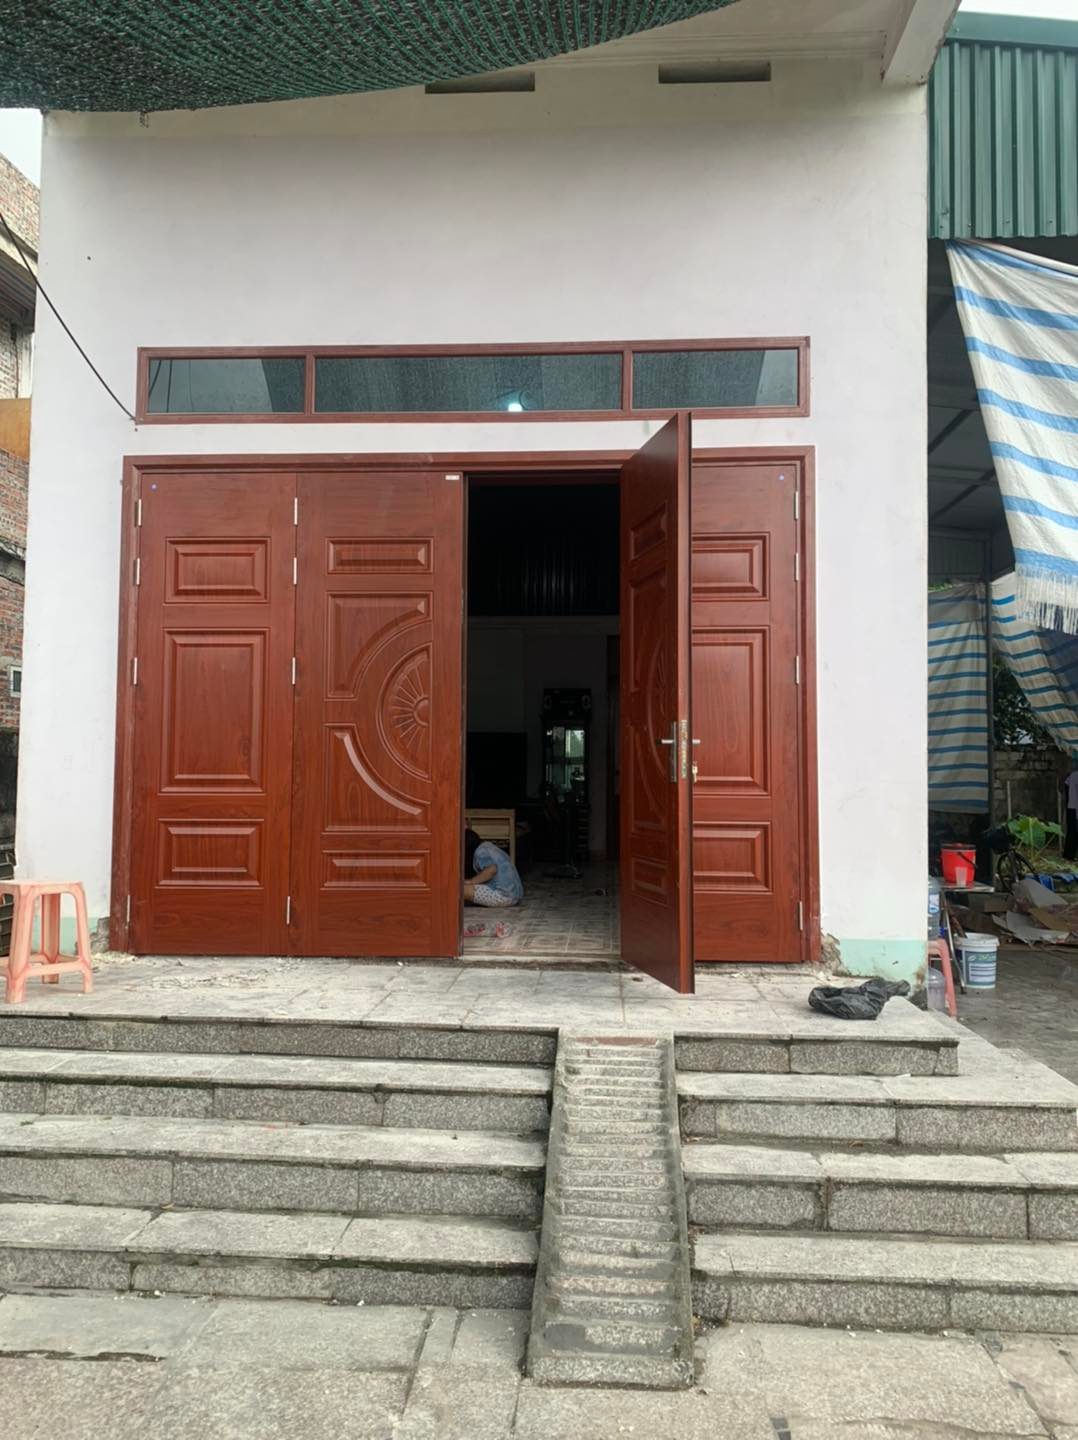 Báo giá cửa thép vân gỗ tại Phú Yên cửa chính đẹp